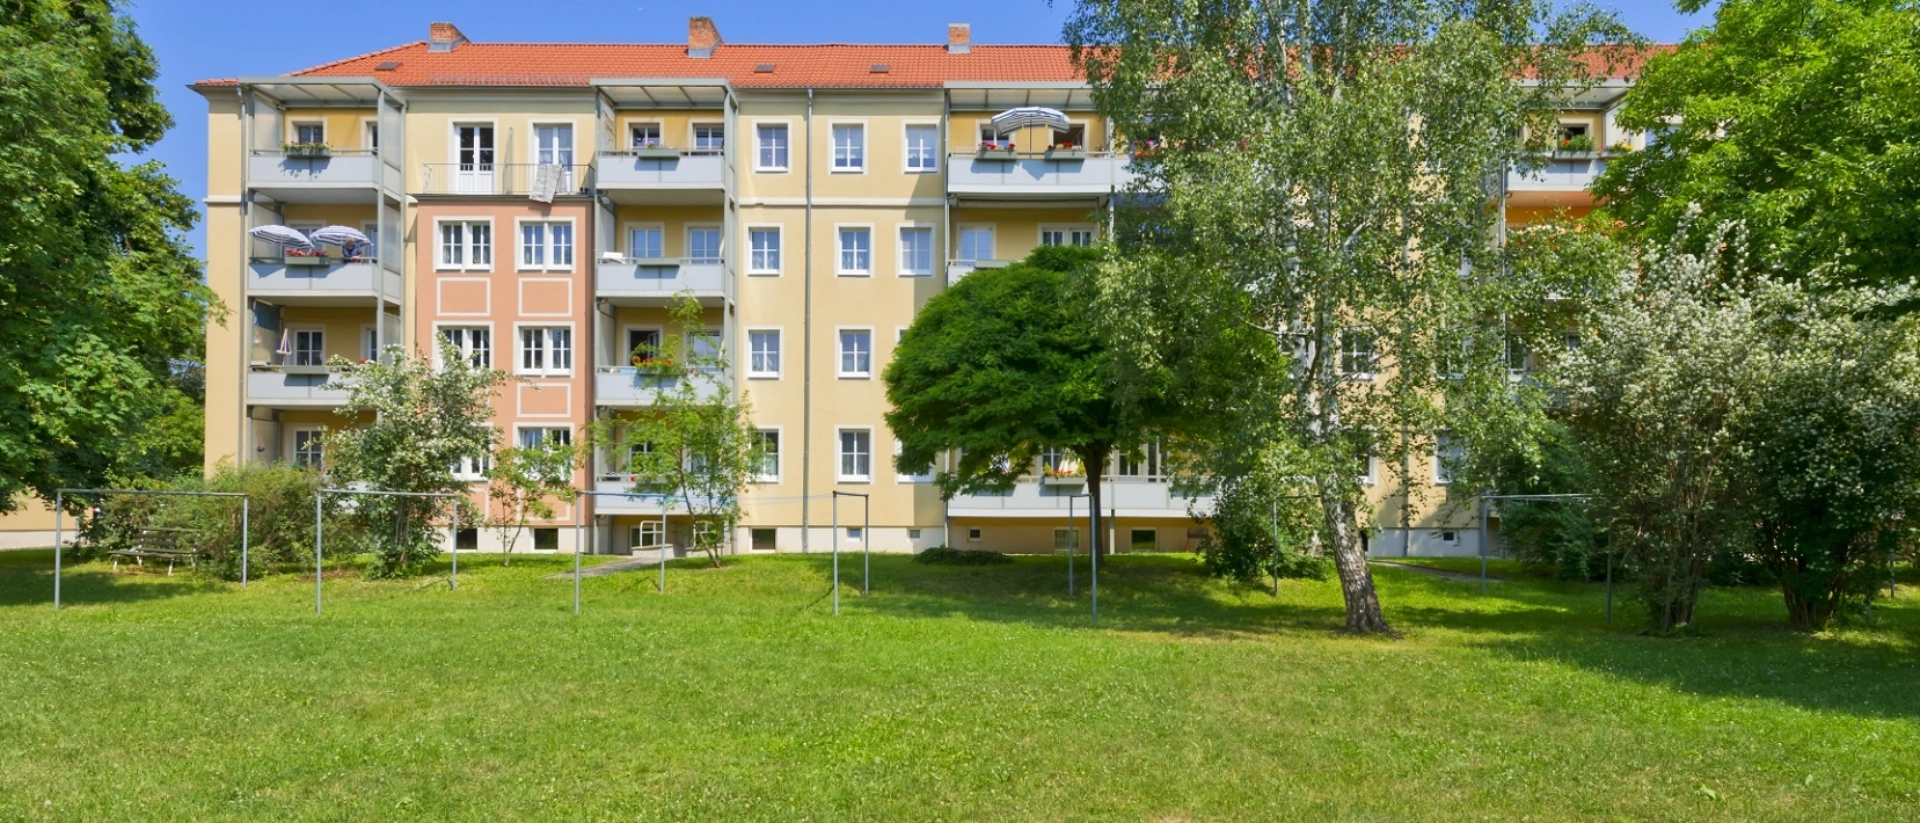 Wohnungen in Jena Ost